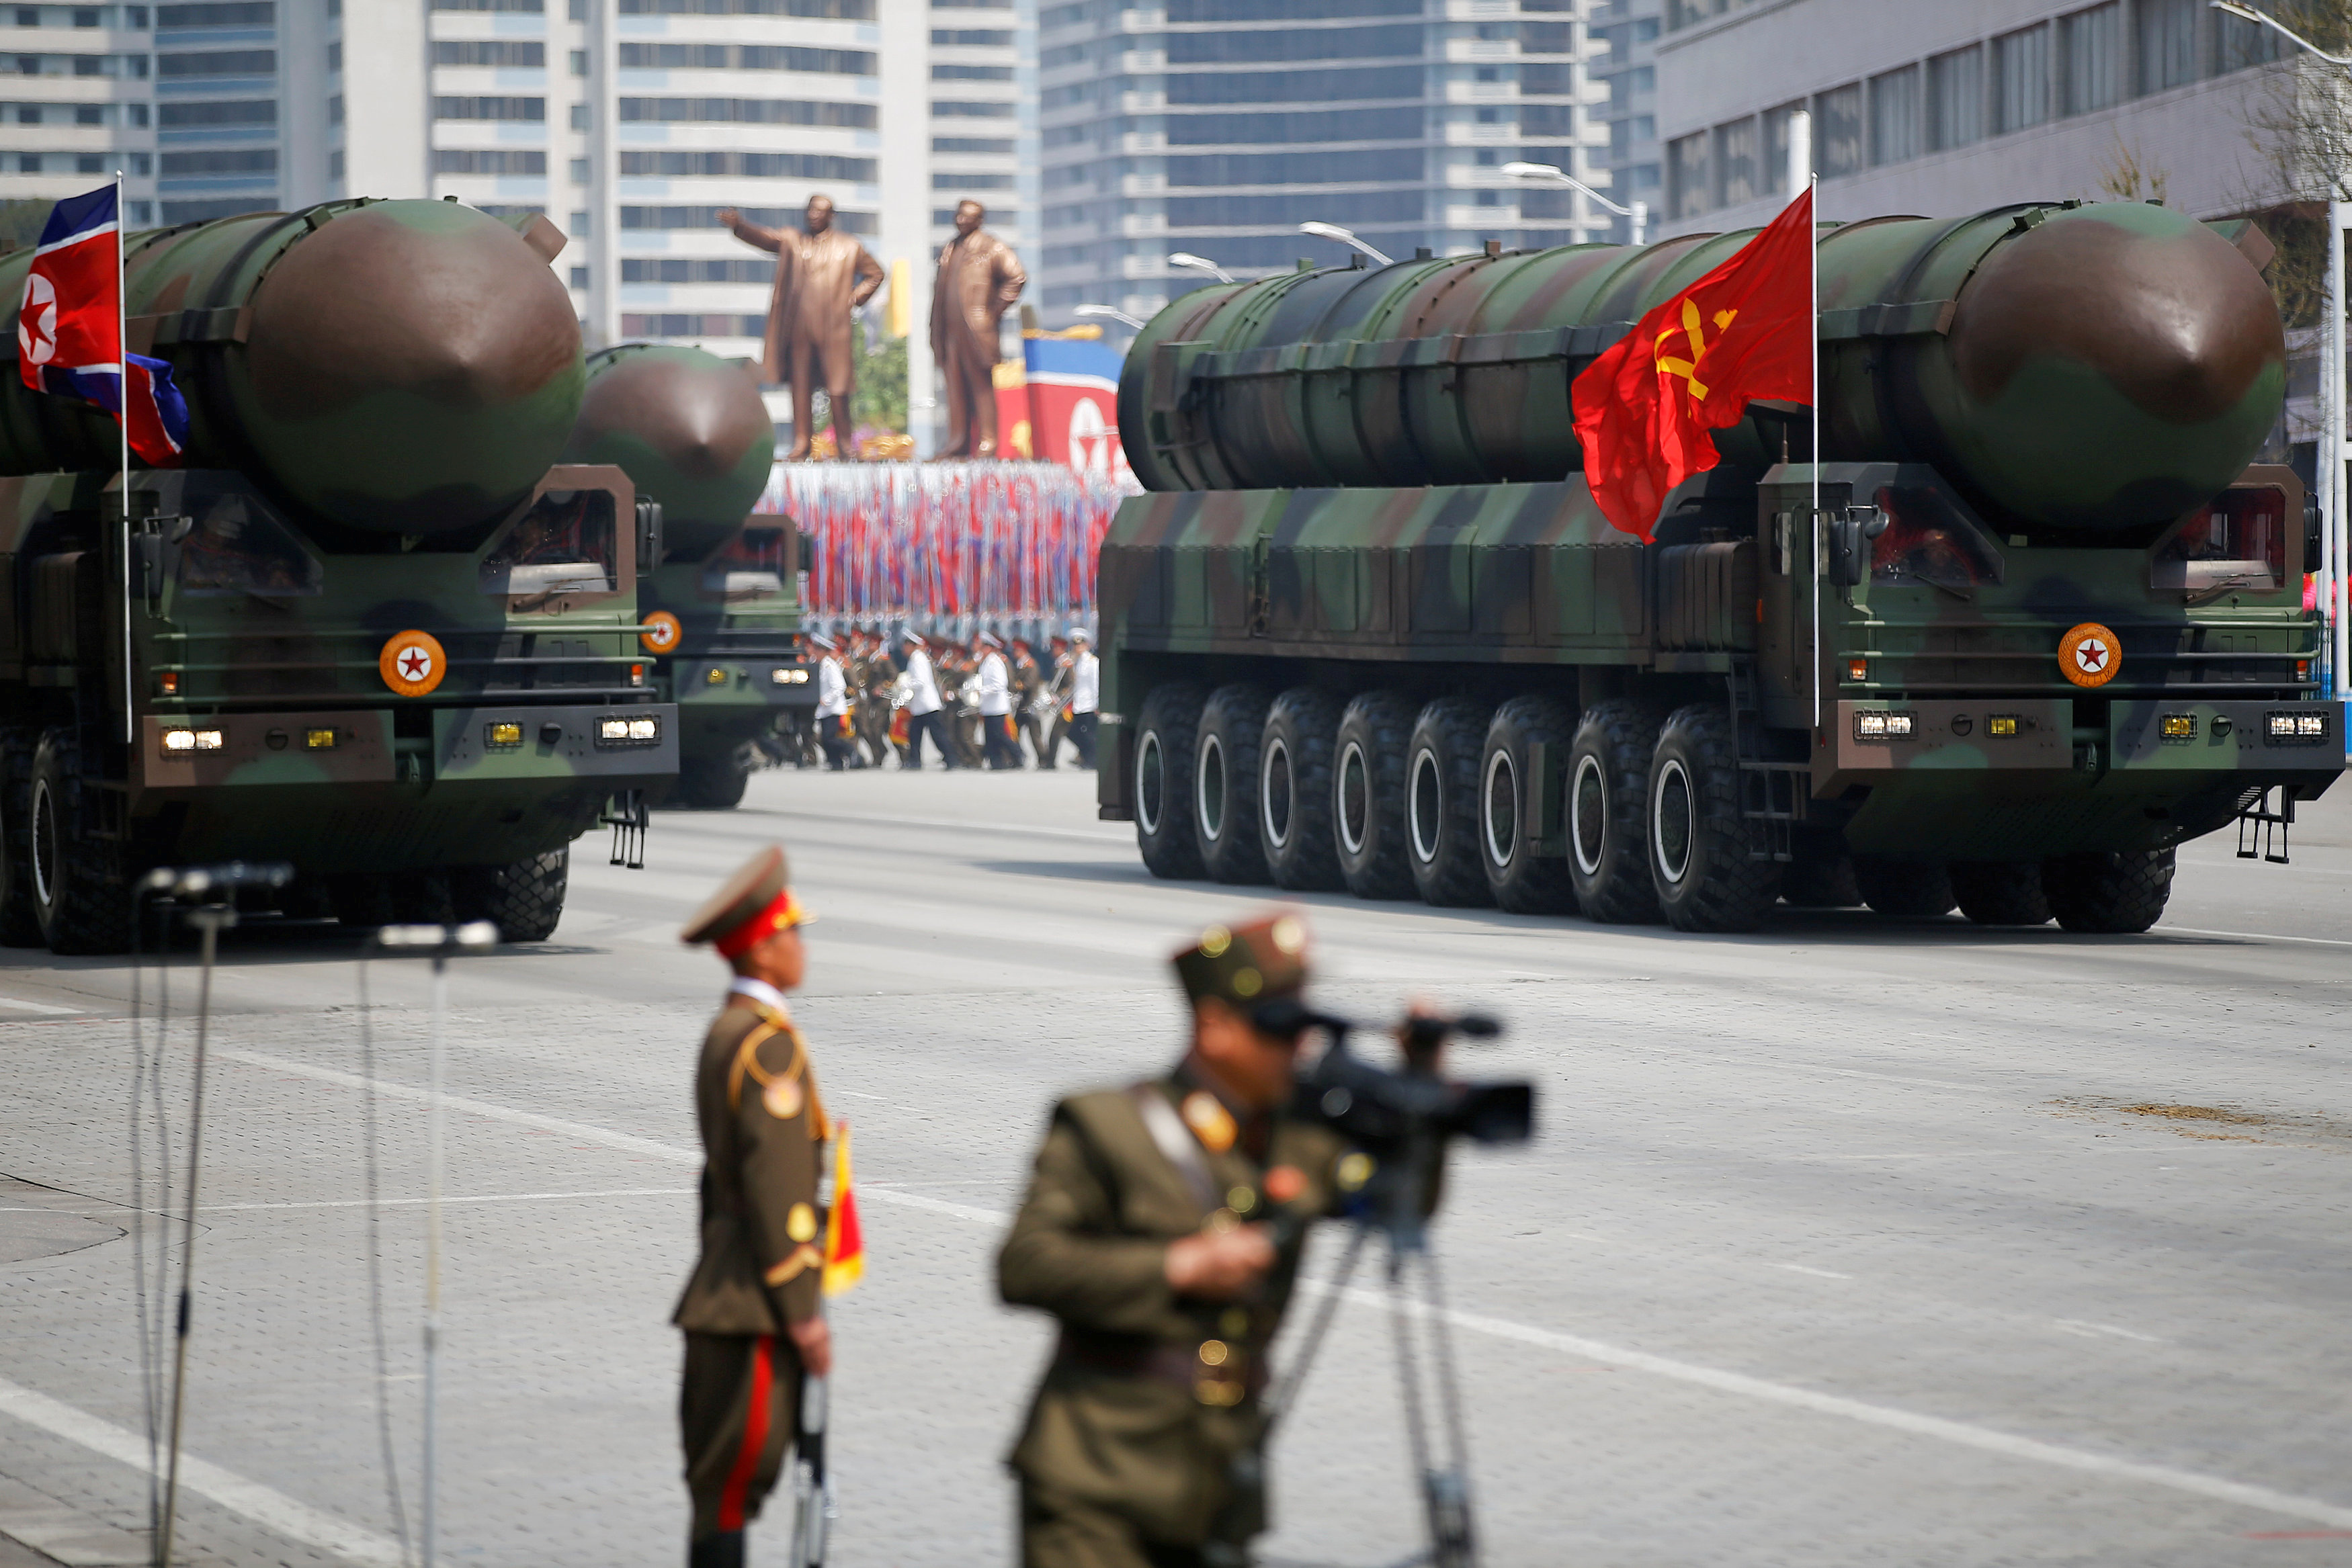 FOTO DE ARCHIVO: Misiles balísticos intercontinentales (ICBM) son exhibidos frente a la tribuna con el líder norcoreano Kim Jong-un y otros altos funcionarios durante un desfile militar en Pyongyang, Corea del Norte, el 15 de abril de 2017. REUTERS/Damir Sagolj